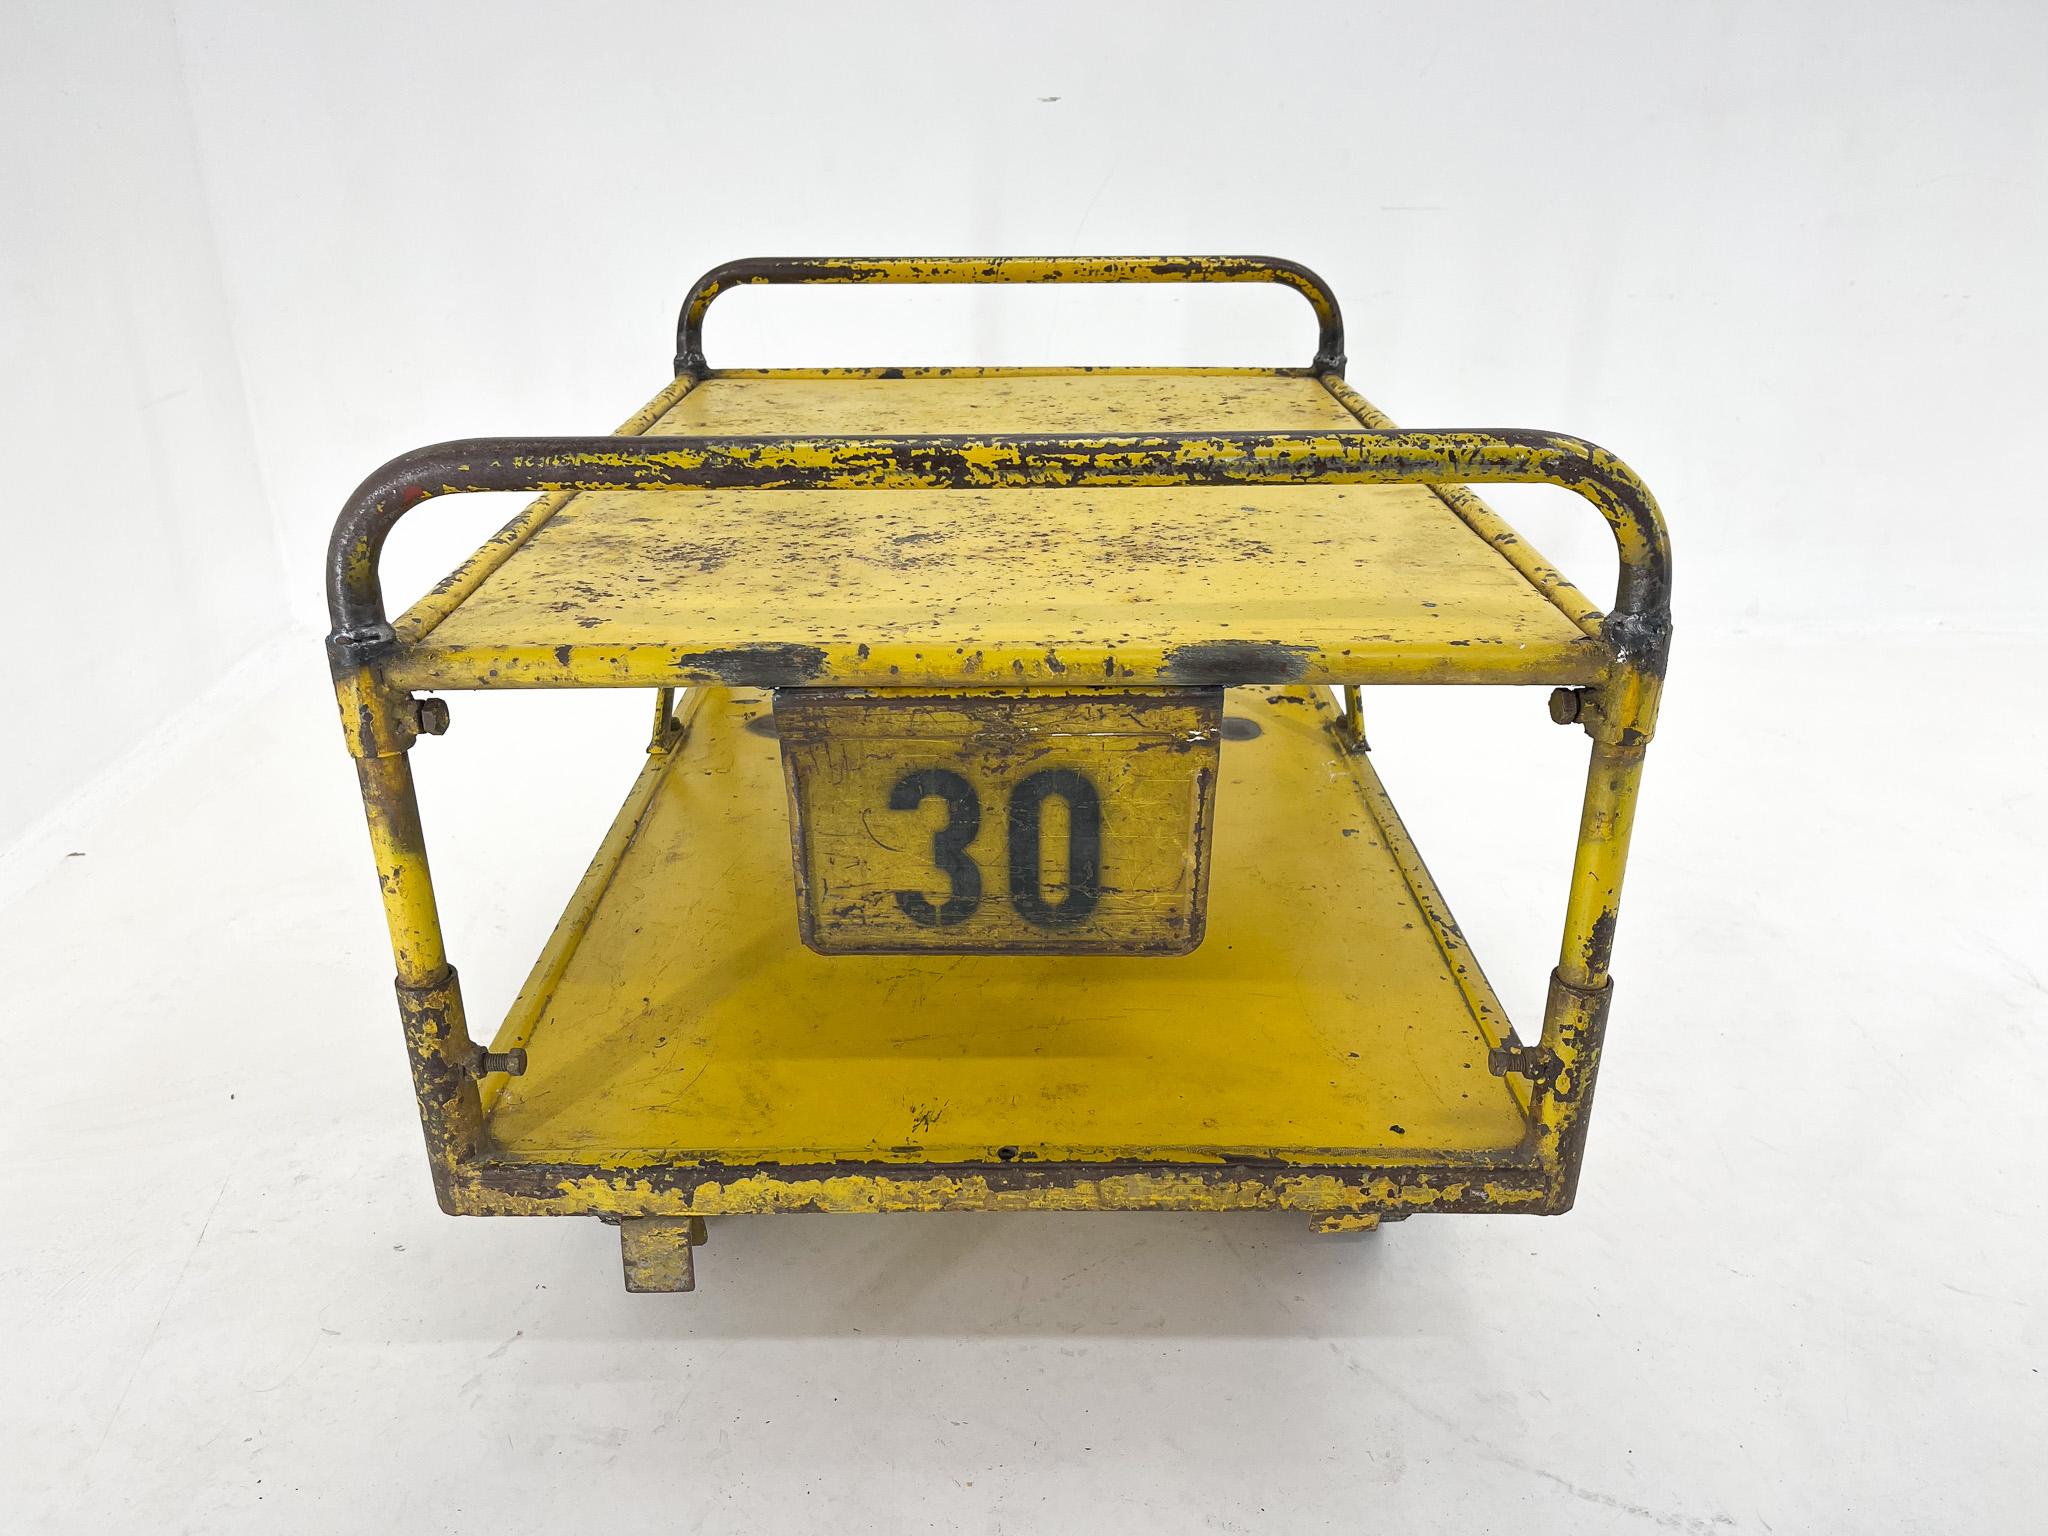 Metal Vintage Industrial Coffee or Side Table on Wheels / Industrial Cart For Sale